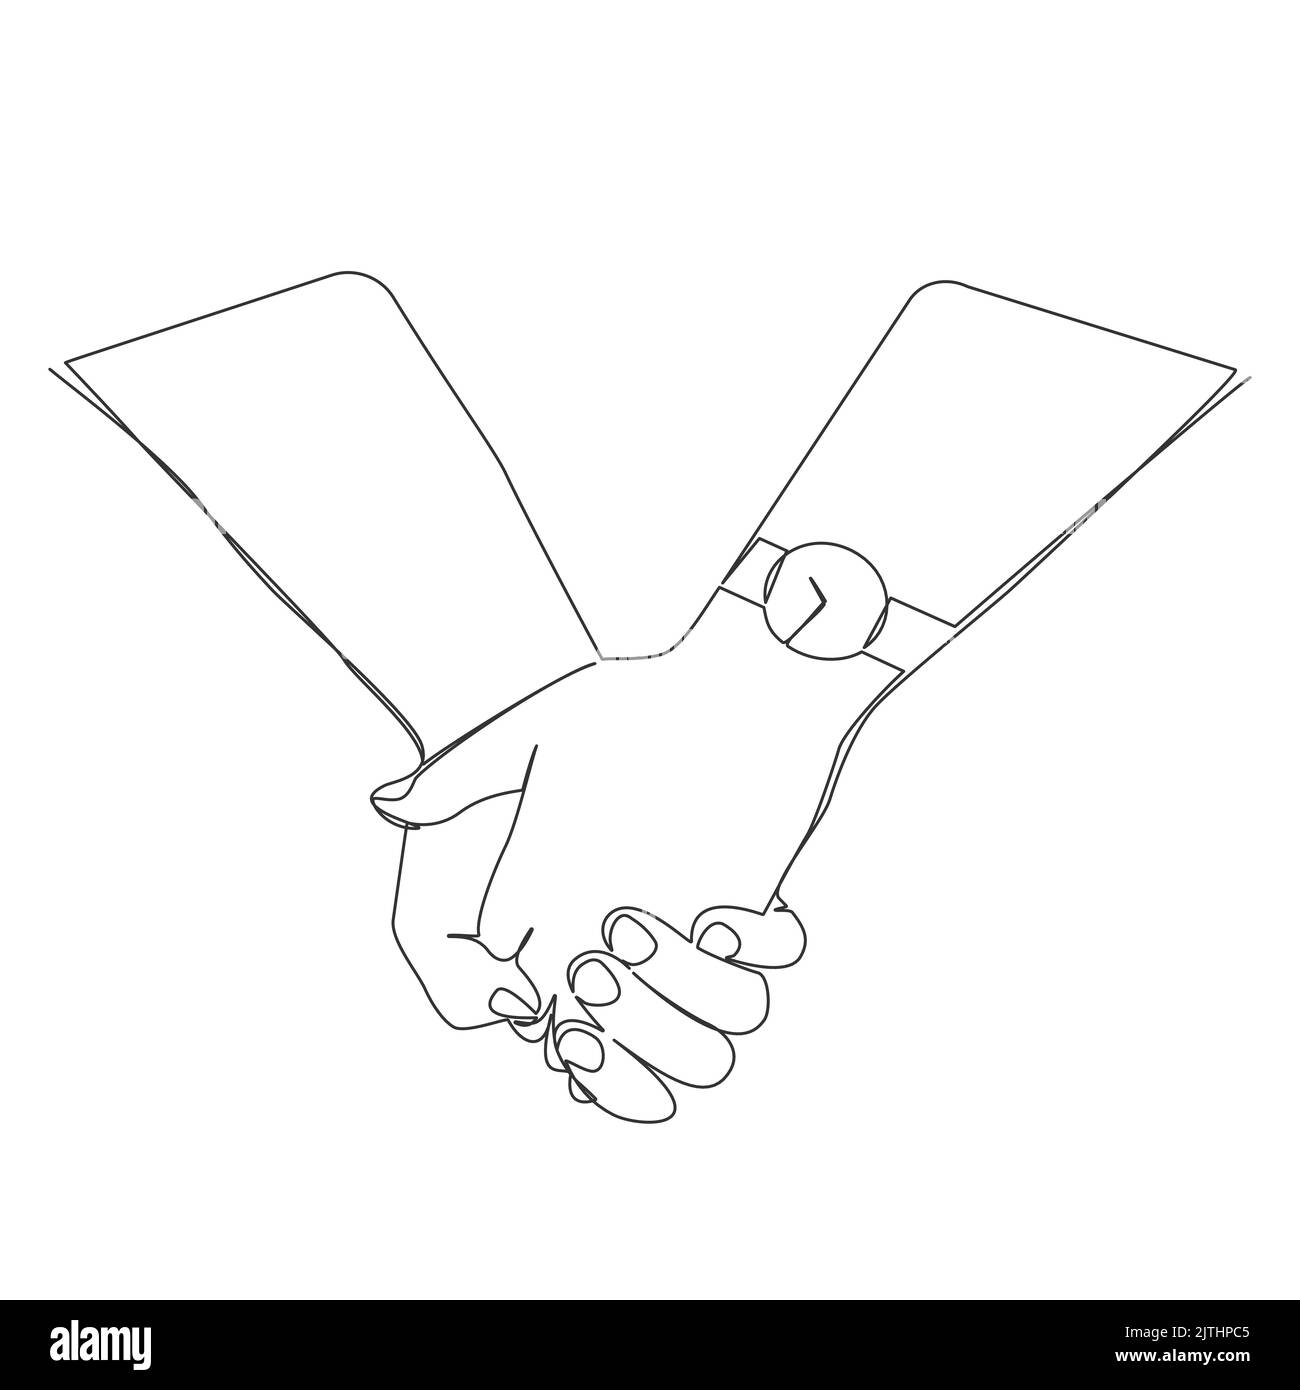 disegno a linea singola di una coppia che tiene le mani, illustrazione vettoriale della line art Illustrazione Vettoriale